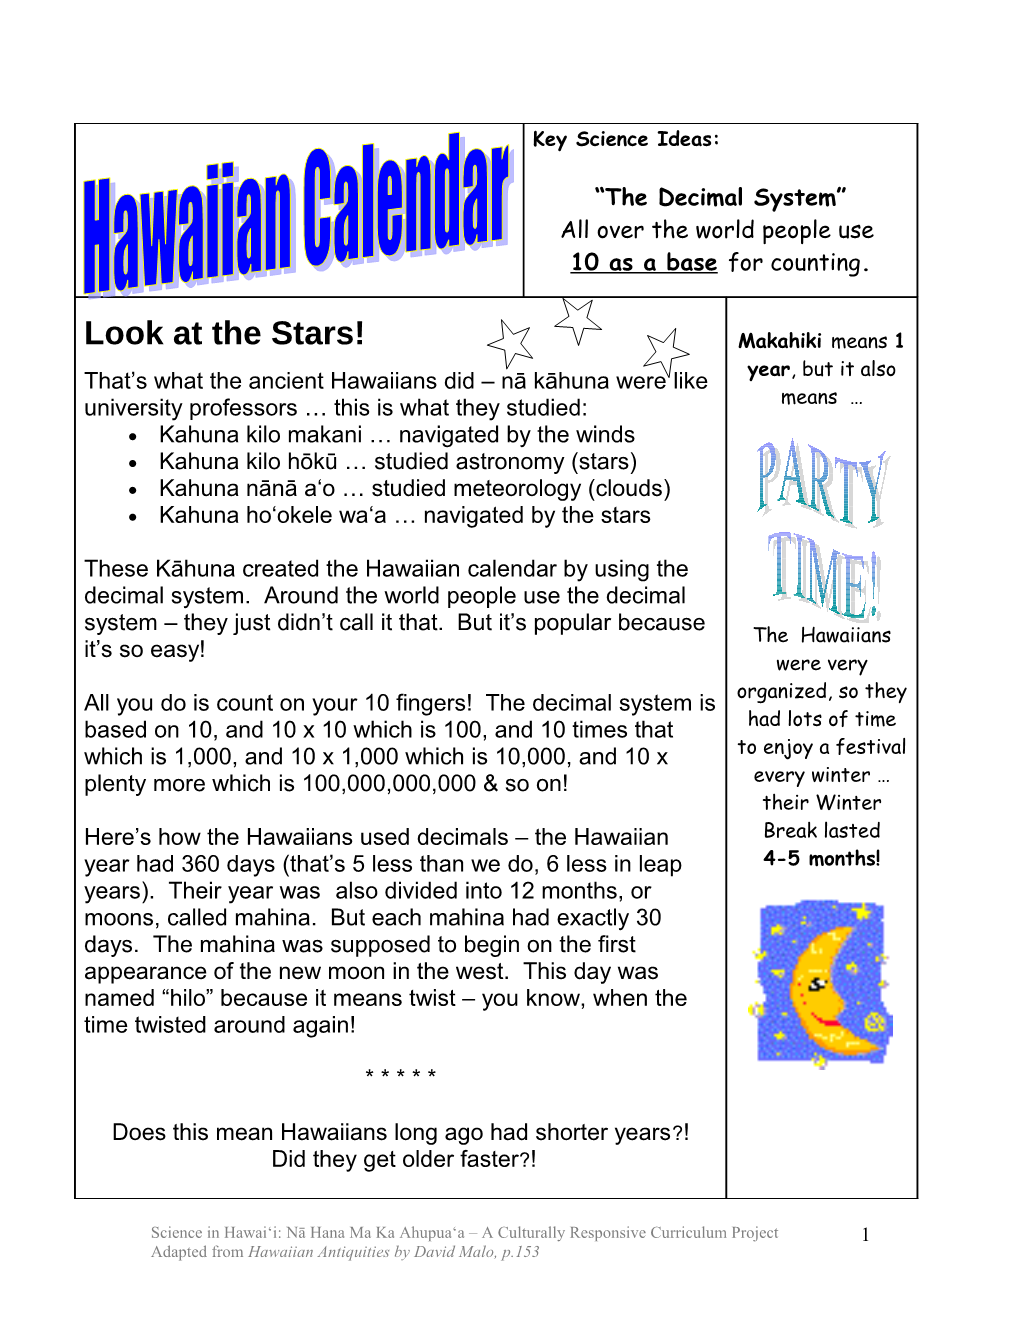 SSR Hawaiian Calendar & Decimals